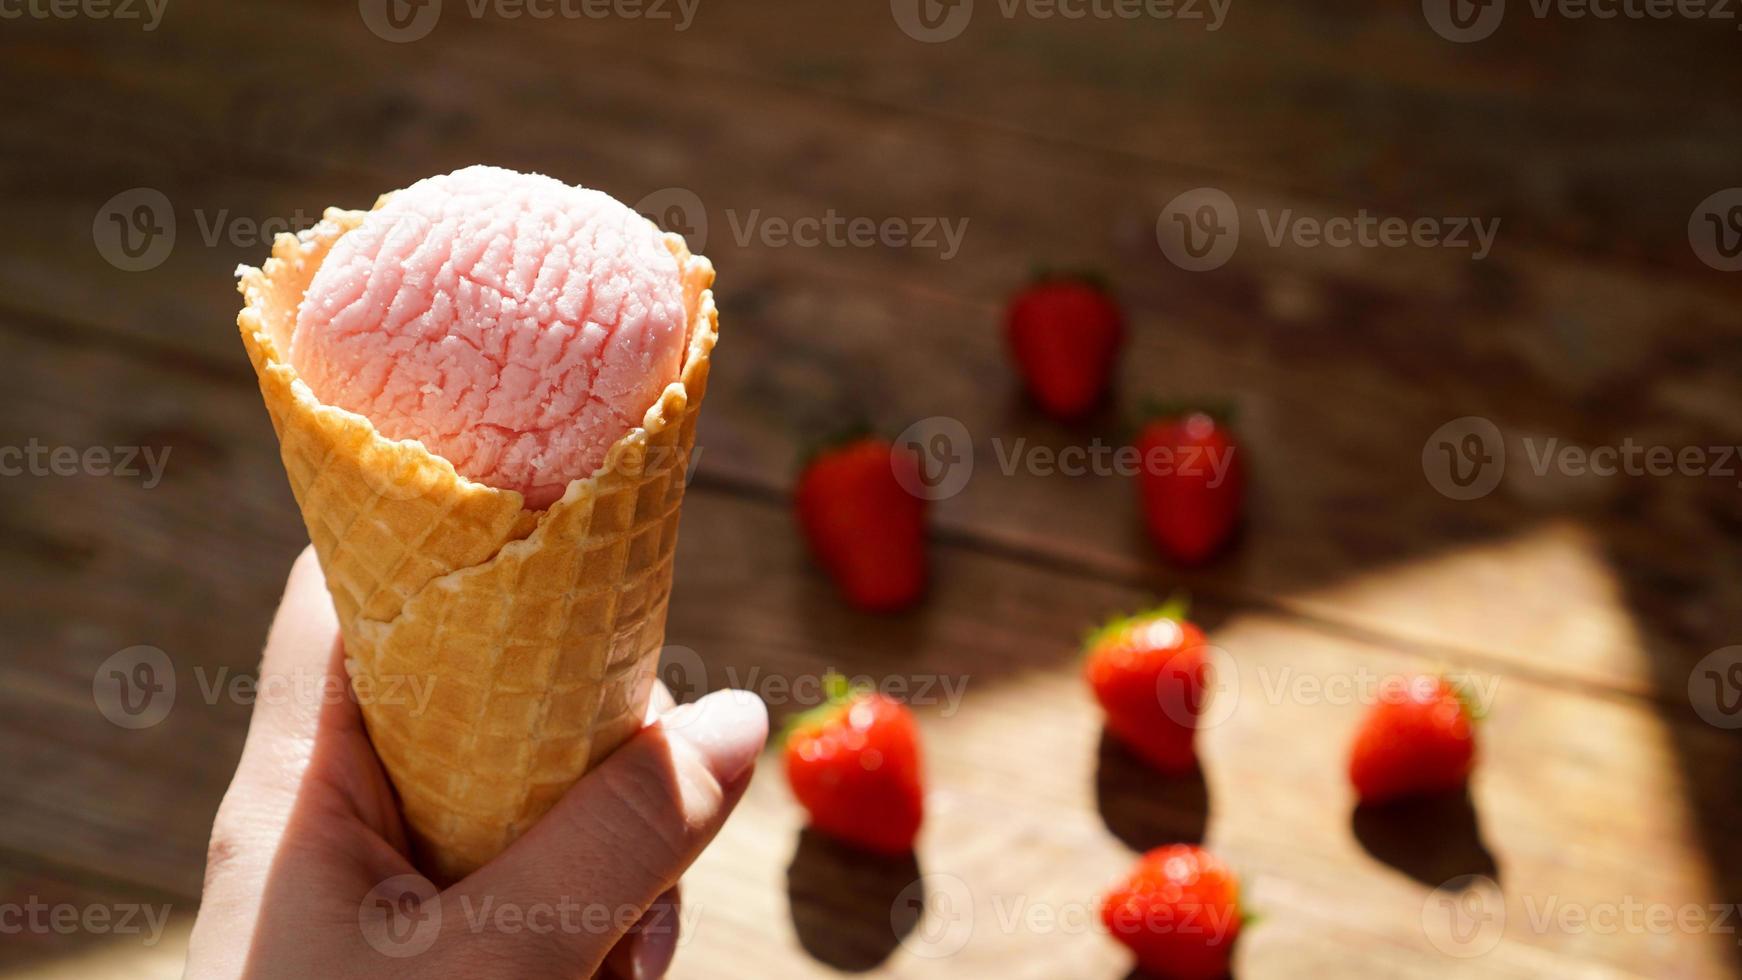 Cerrar imagen de mujer mano sujetando helado de frambuesa foto